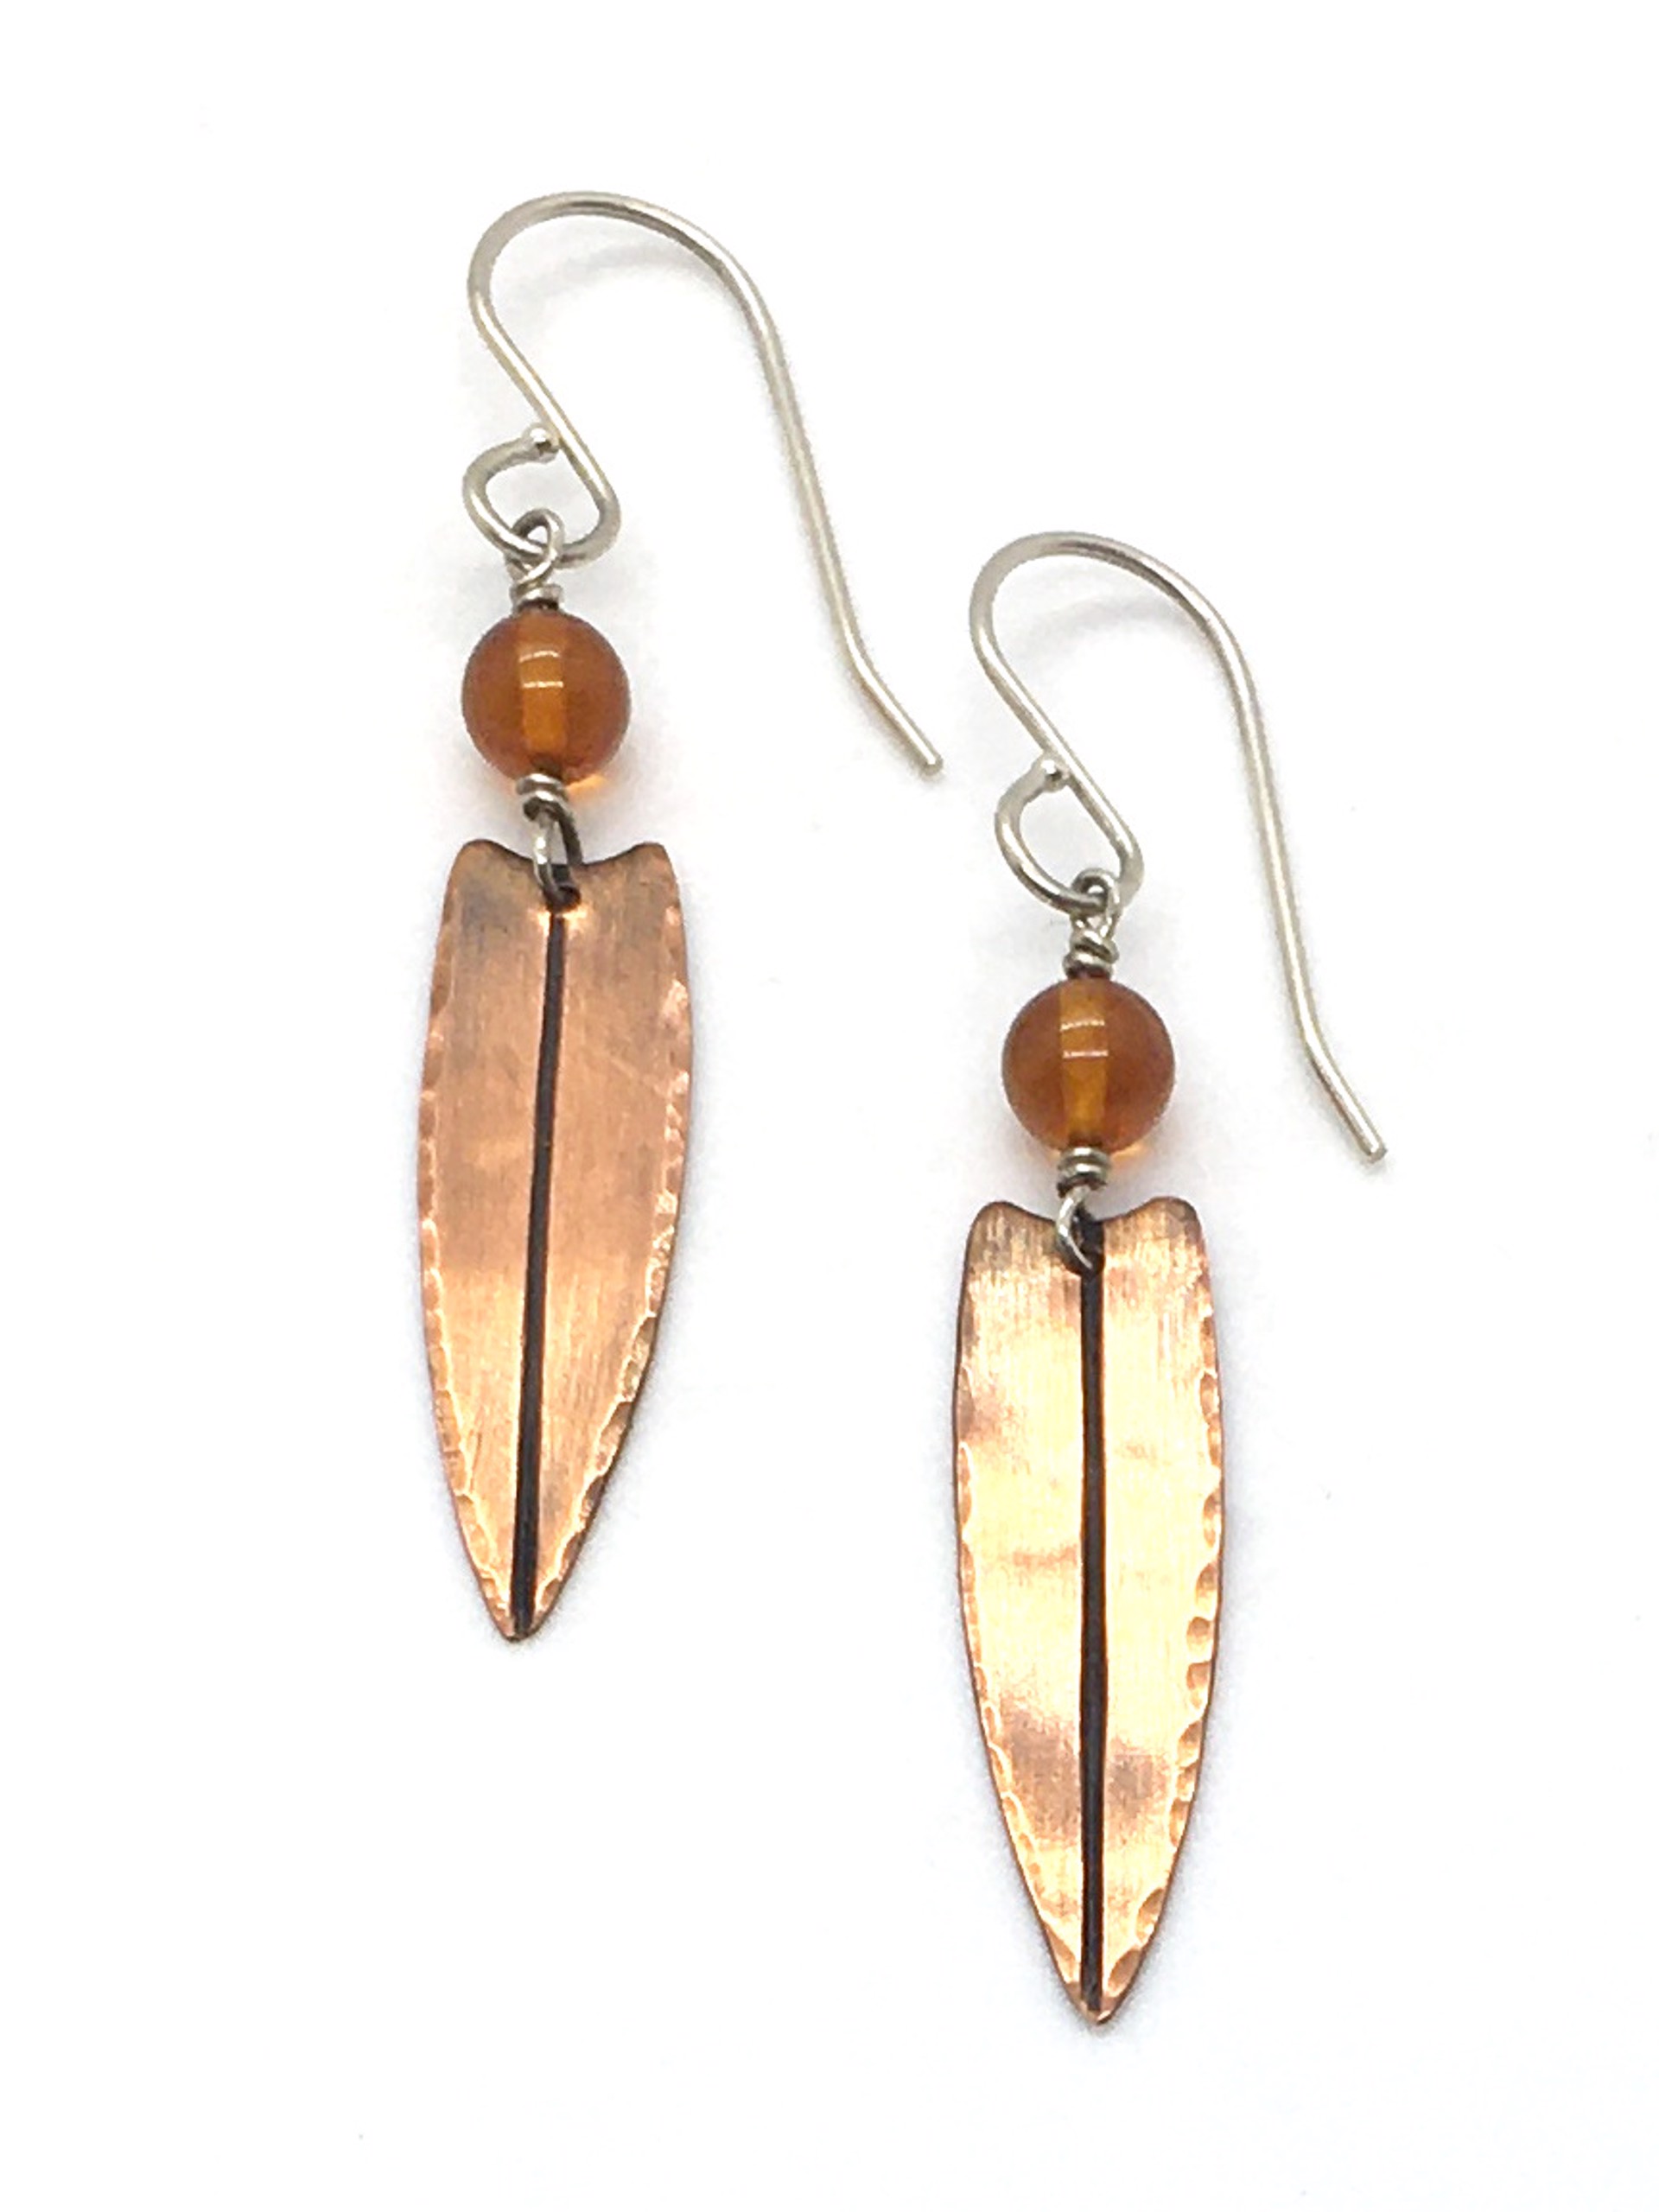 Copper Baltic Amber Earrings by Grace Ashford